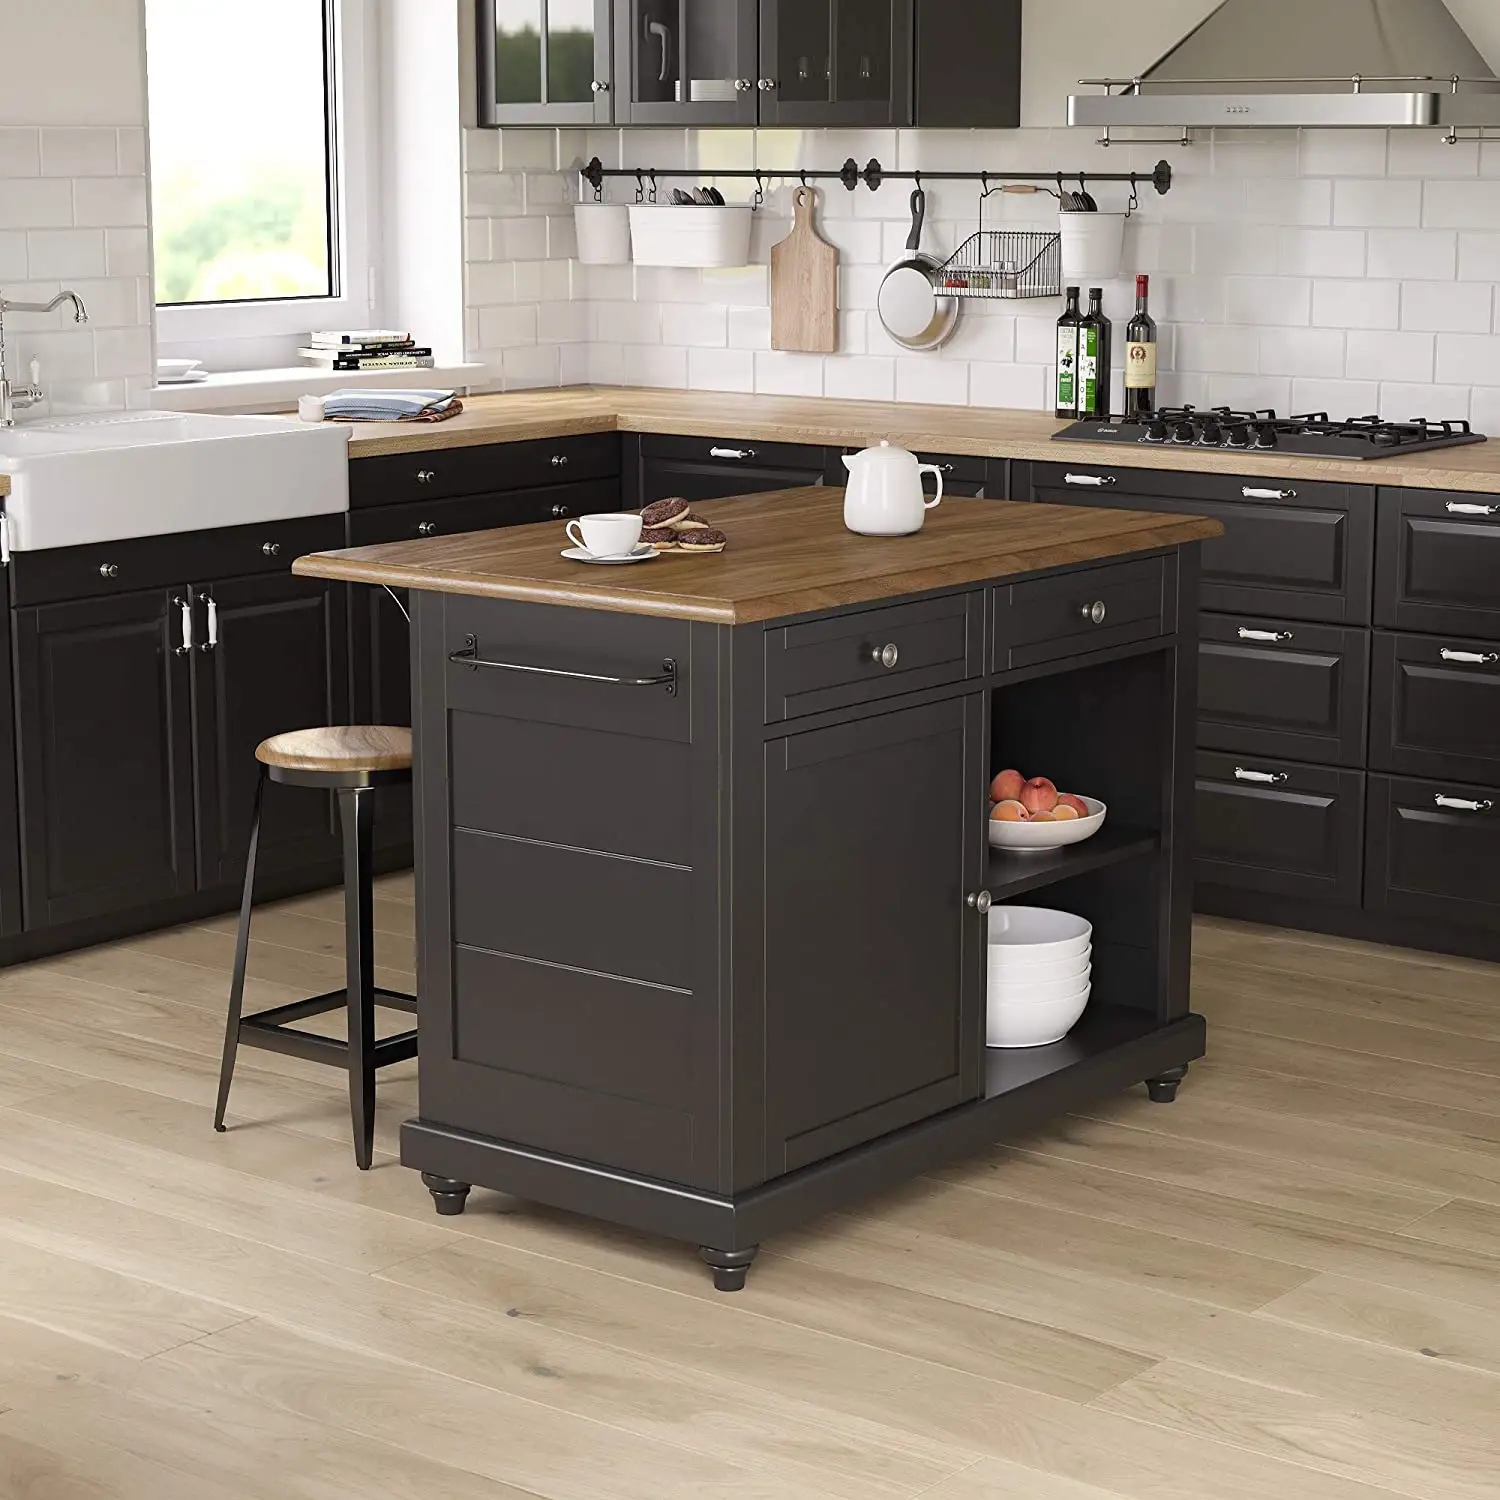 Marzo expo 2021 armadi da cucina in legno massello americano cucina moderna isola con ruote cucina unite mobili